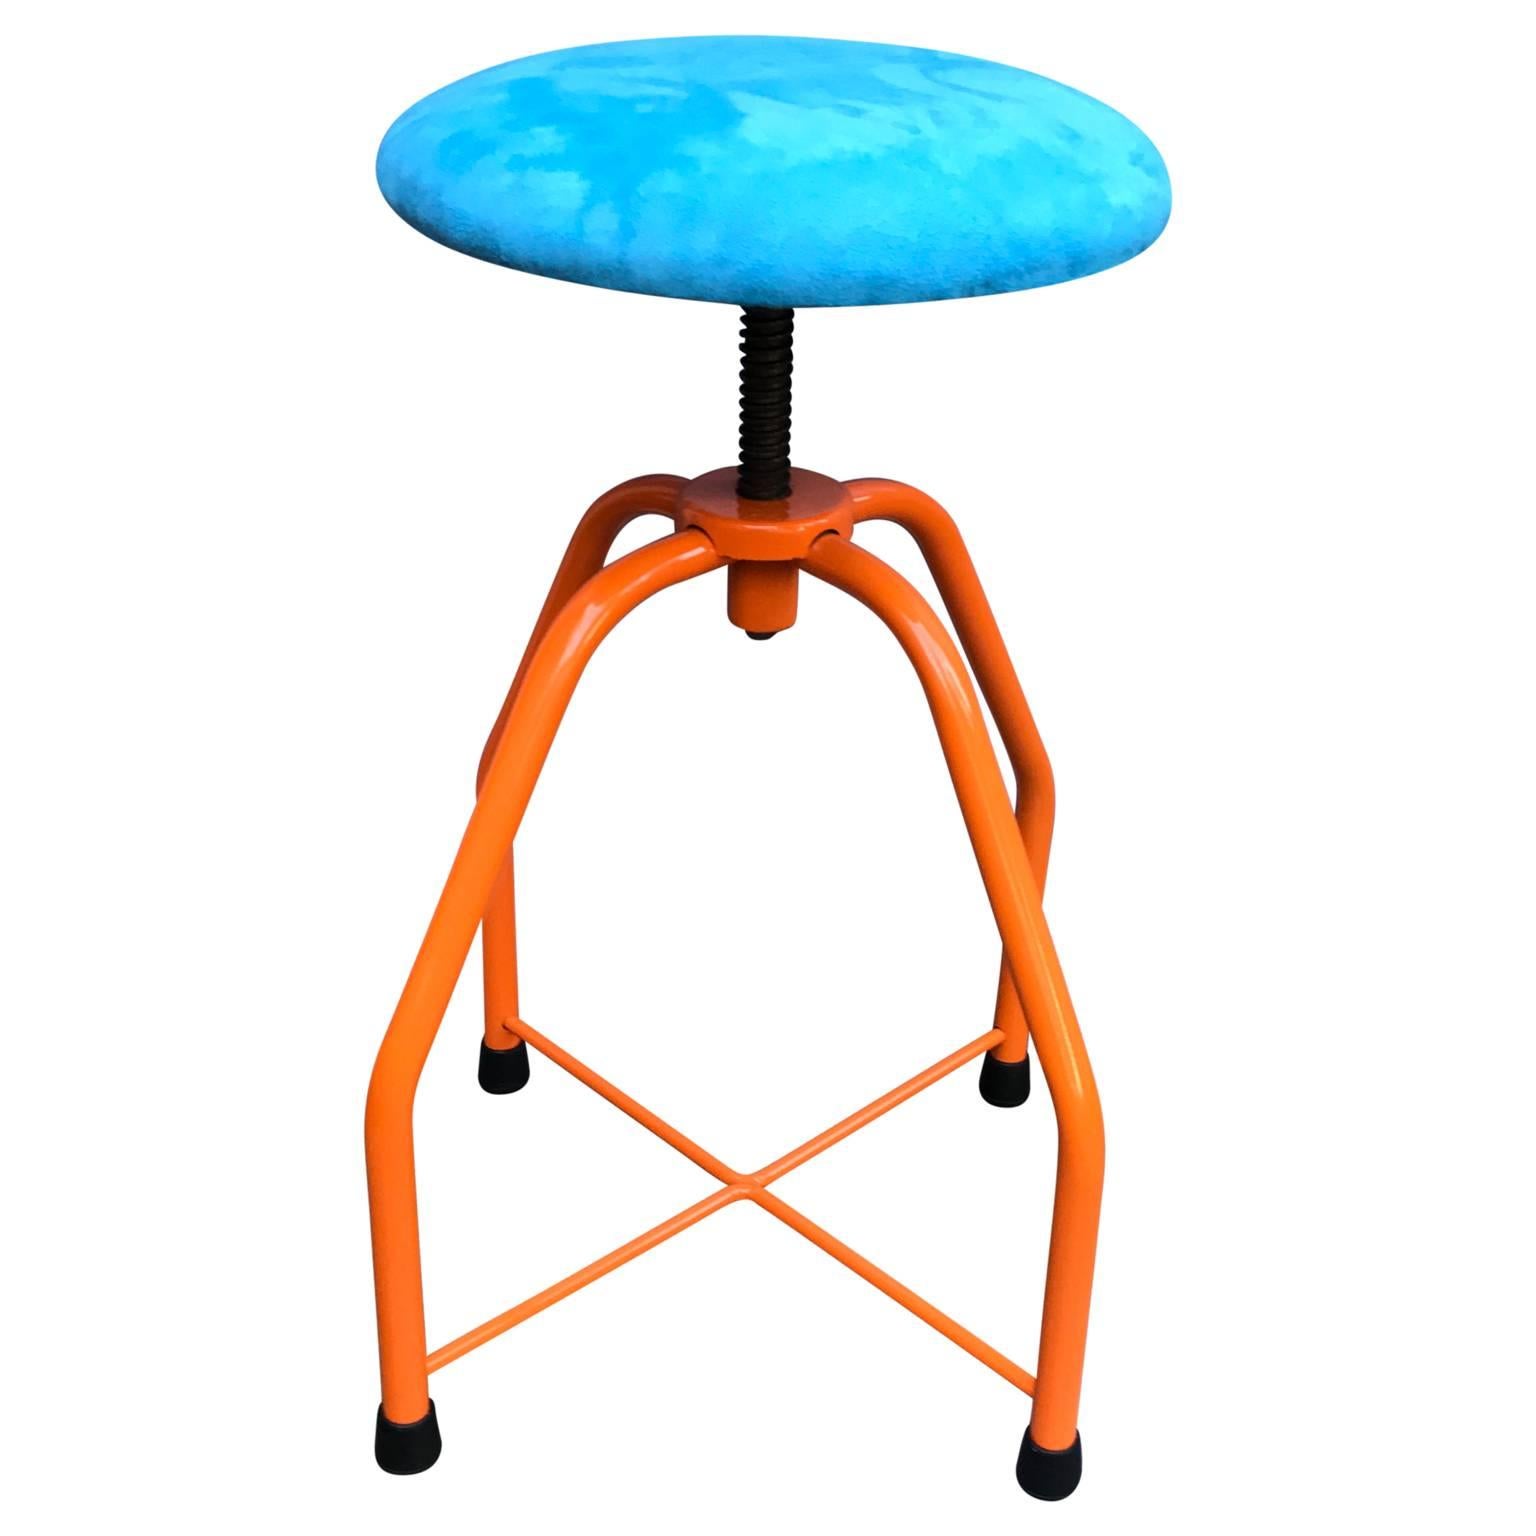 Leuchtend orangefarbener Hocker aus der Industriezeit mit blauem Sitz aus Wildlederimitat. Dieser lustige und bunte Hocker hat einen höhenverstellbaren Sitz. Dieses witzige Stück ist ein toller Akzent in der Küche, im Vorratsraum oder überall dort,